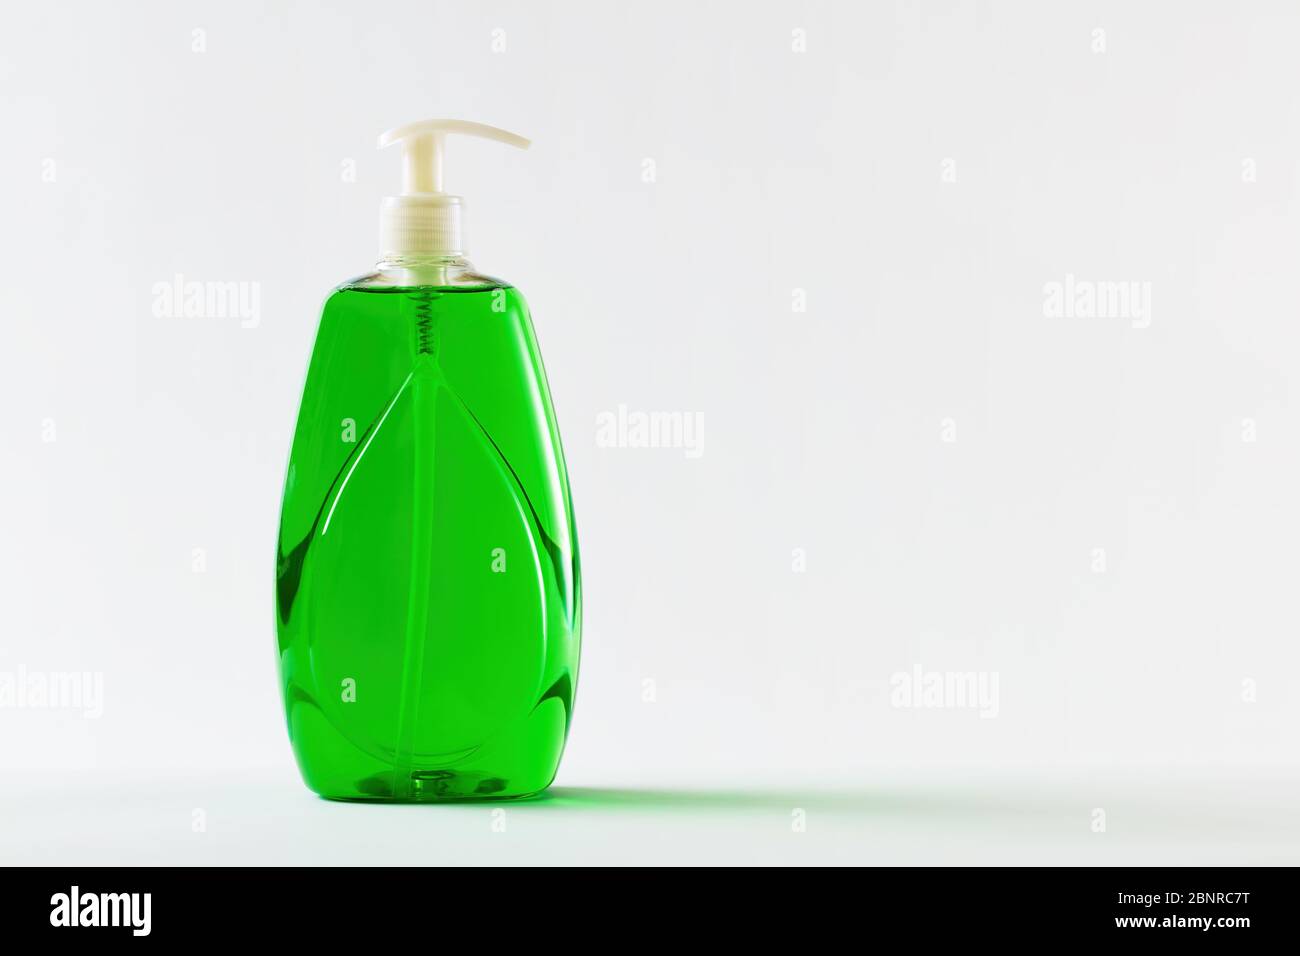 https://c8.alamy.com/comp/2BNRC7T/green-liquid-soap-in-plastic-bottle-for-hand-sanitation-on-white-background-2BNRC7T.jpg